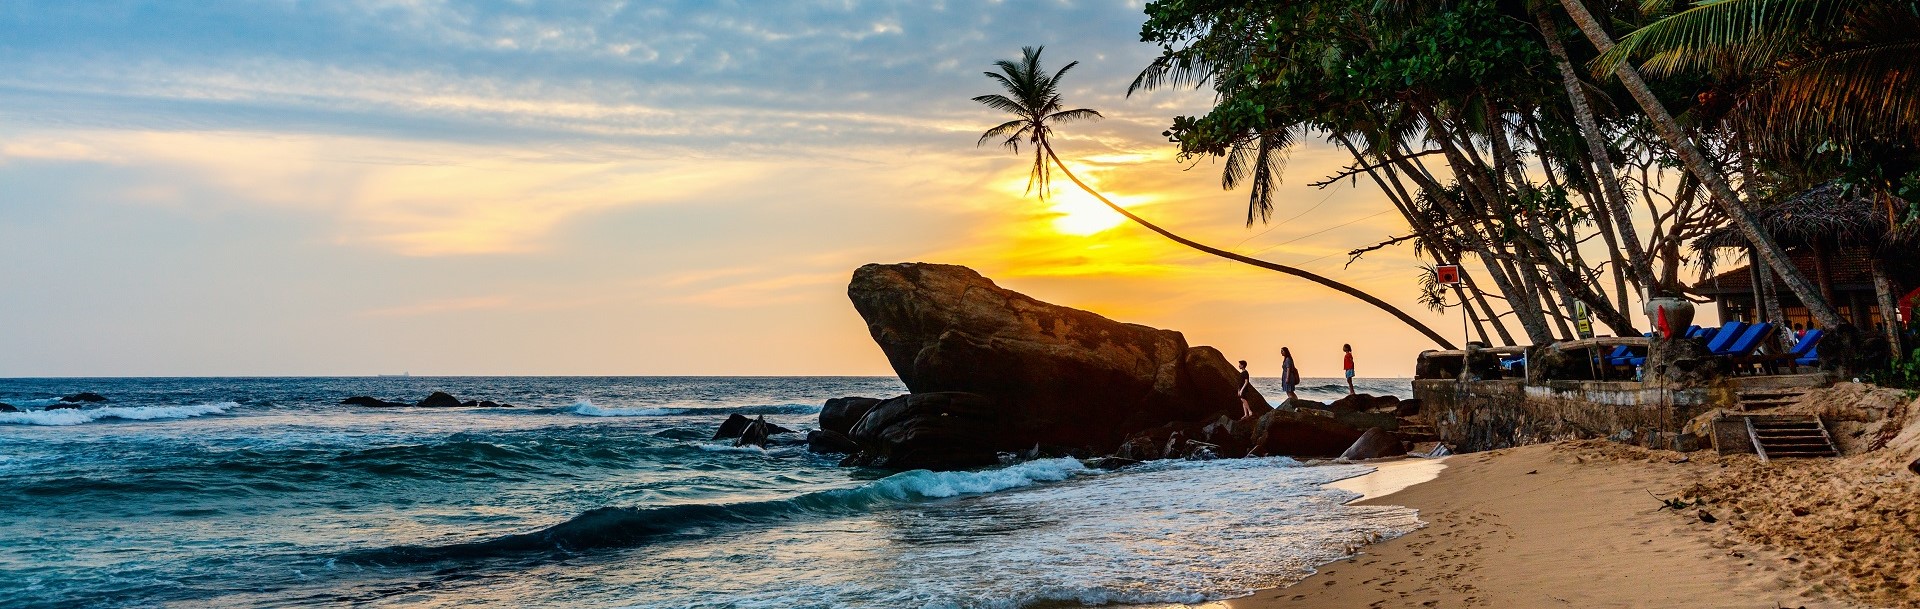 Sri Lanka - West Coast